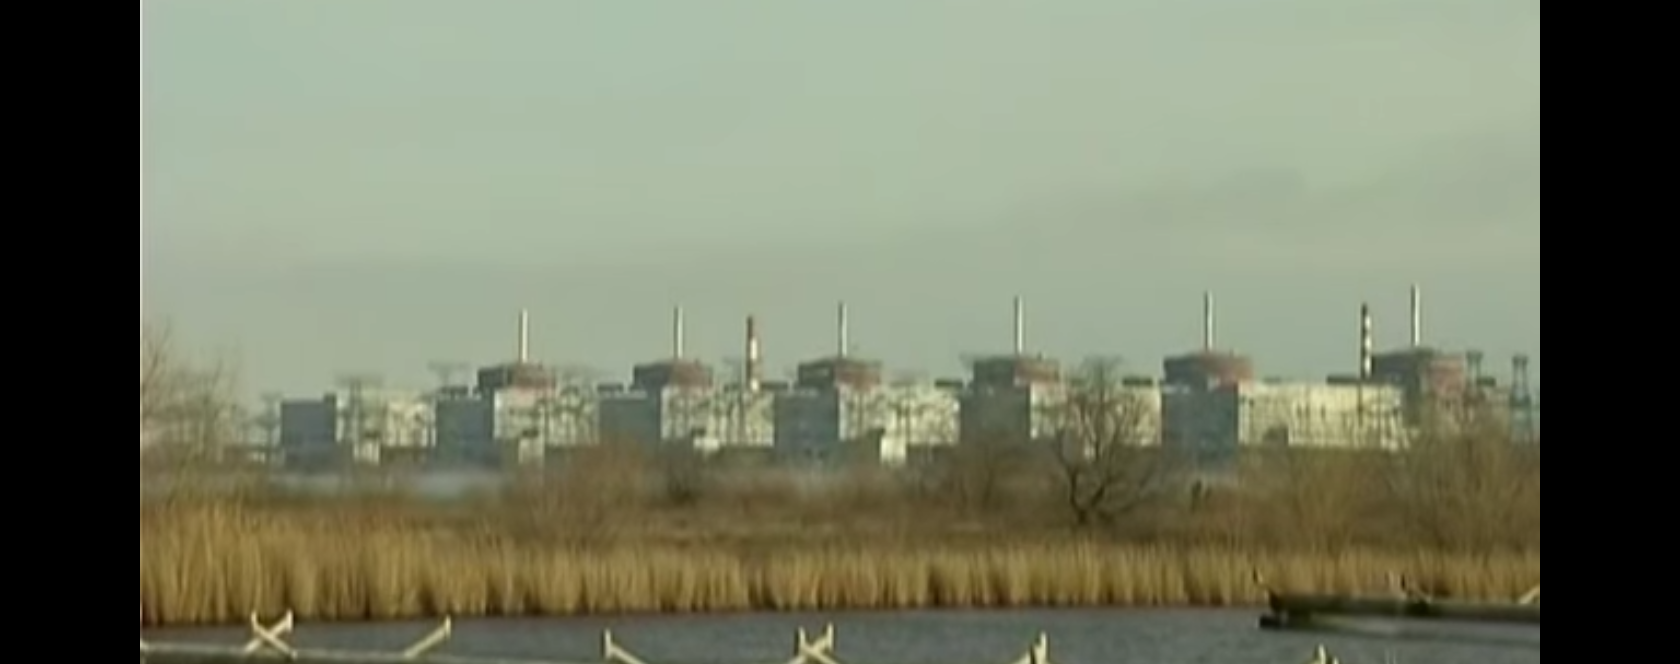 Rusija siekia perimti iš Ukrainos Zaporižios atominę elektrinę